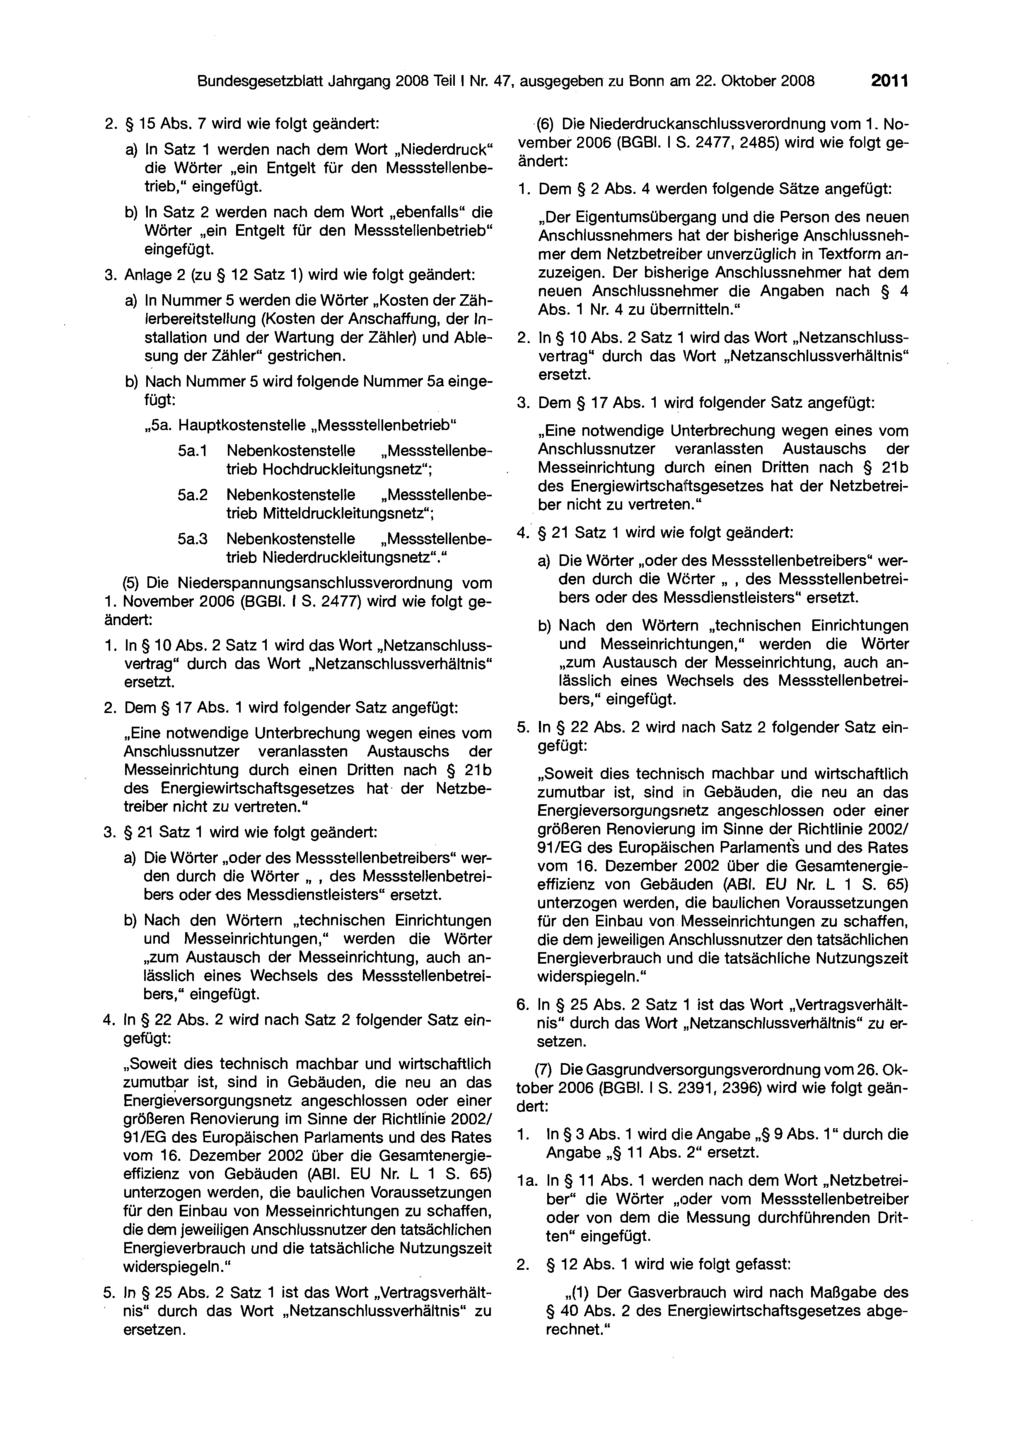 Bundesgesetzblatt Jahrgang 2008 Teil I Nr. 47, ausgegeben zu Bonn arri 22. Oktober 2008 201 1 2. 5 15 Abs. 7 wird wie folgt geändert: (6) Die Niederdruckarischlussverordnung vom 1.